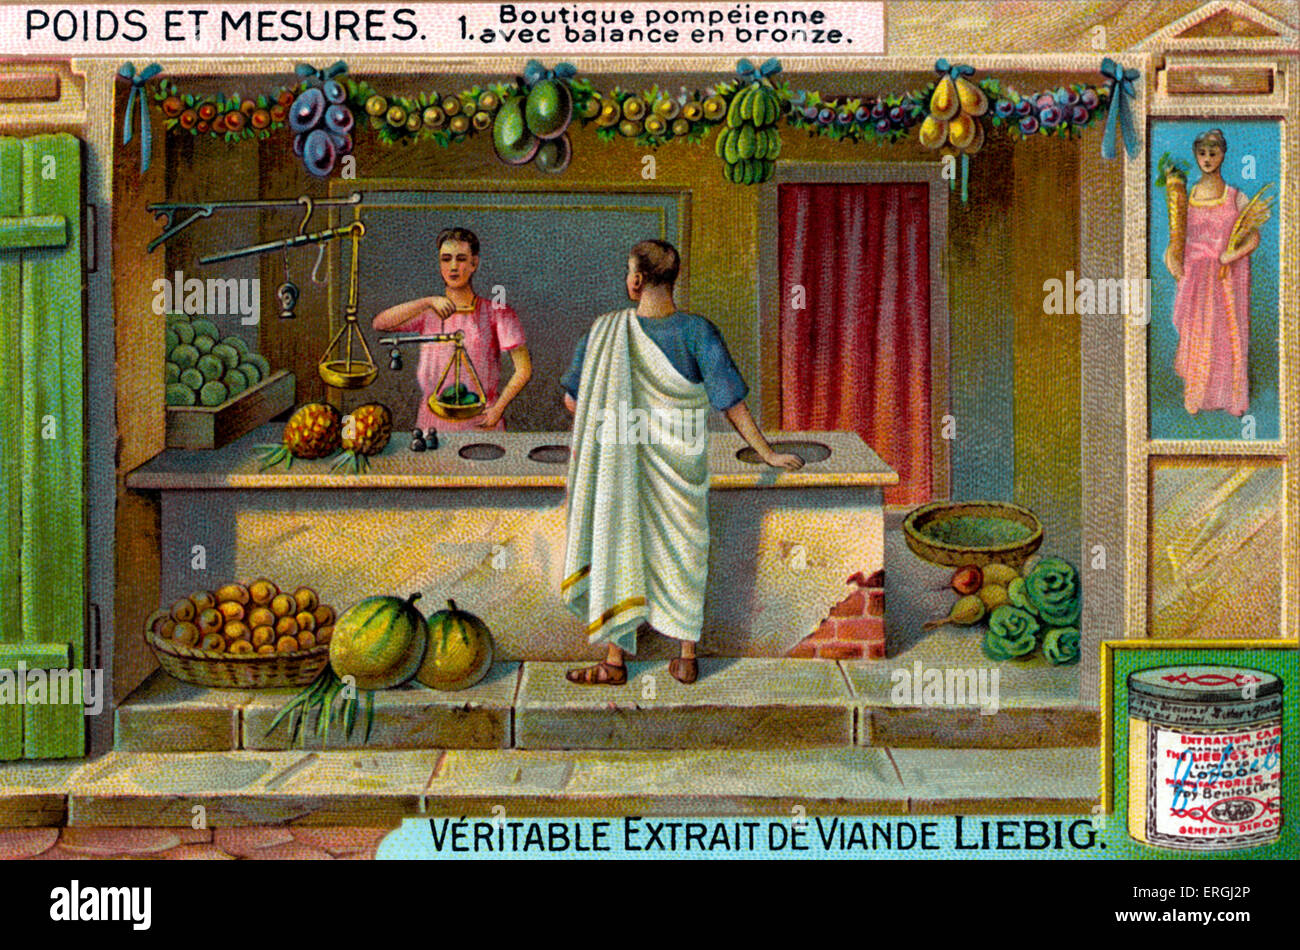 Shop à Pompéi avec l'échelle d'équilibre de bronze. Ville romaine près de Naples, Italie. Illustration de Liebig série de cartes à collectionner : Banque D'Images